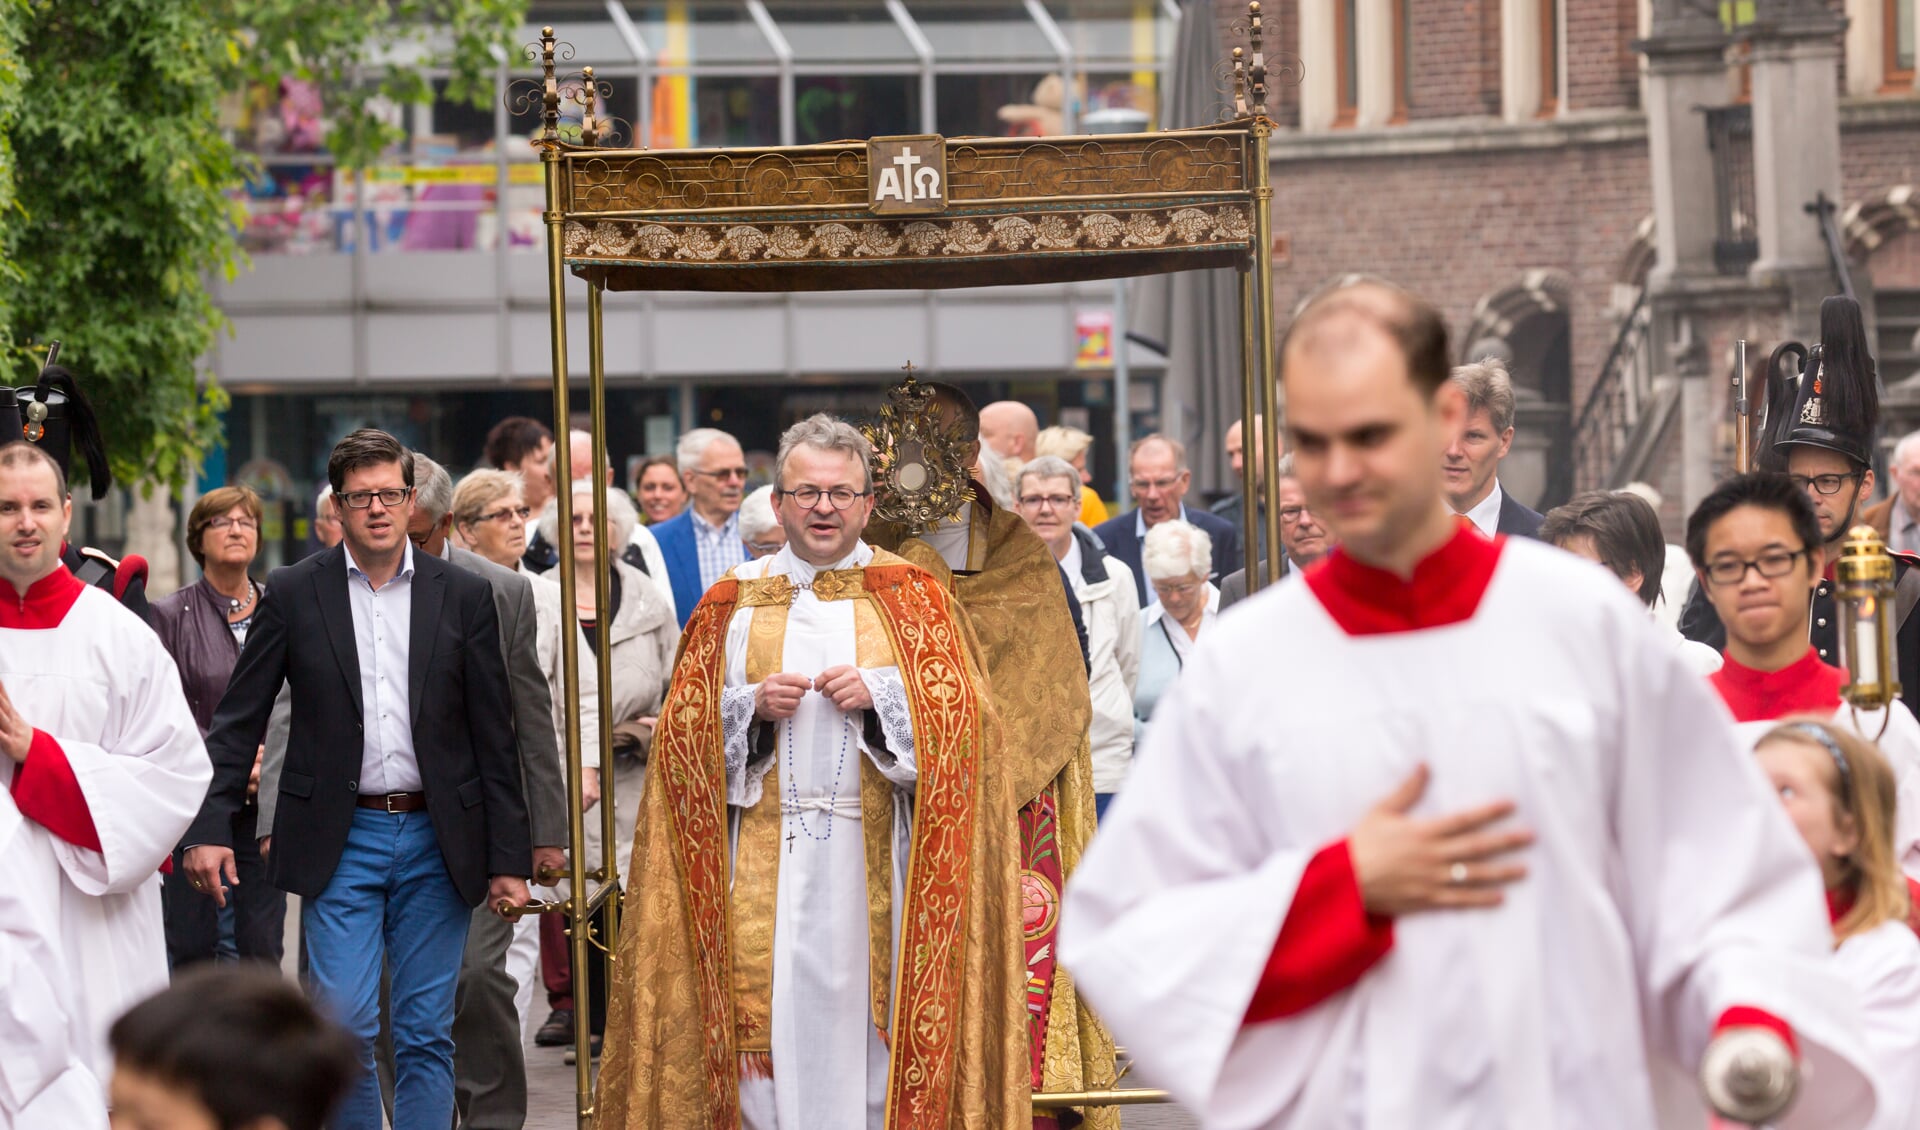 Op zondag 18 juni trekt er weer een sacramentsprocessie door de straten van Venray. 